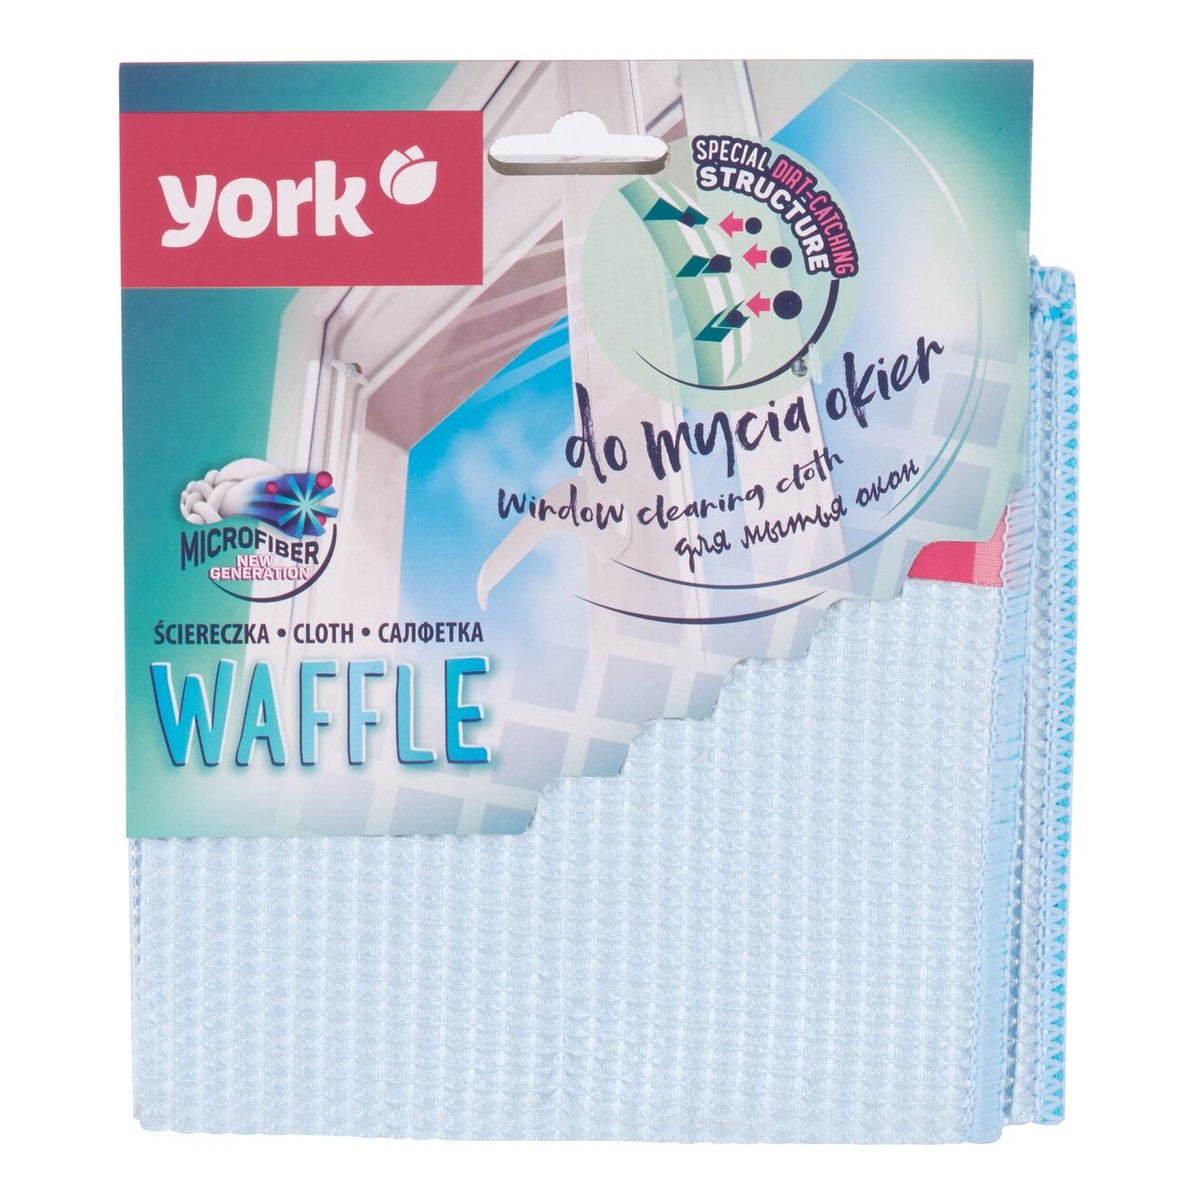 York Ścierka mikrofibra do okien Waffle 2628